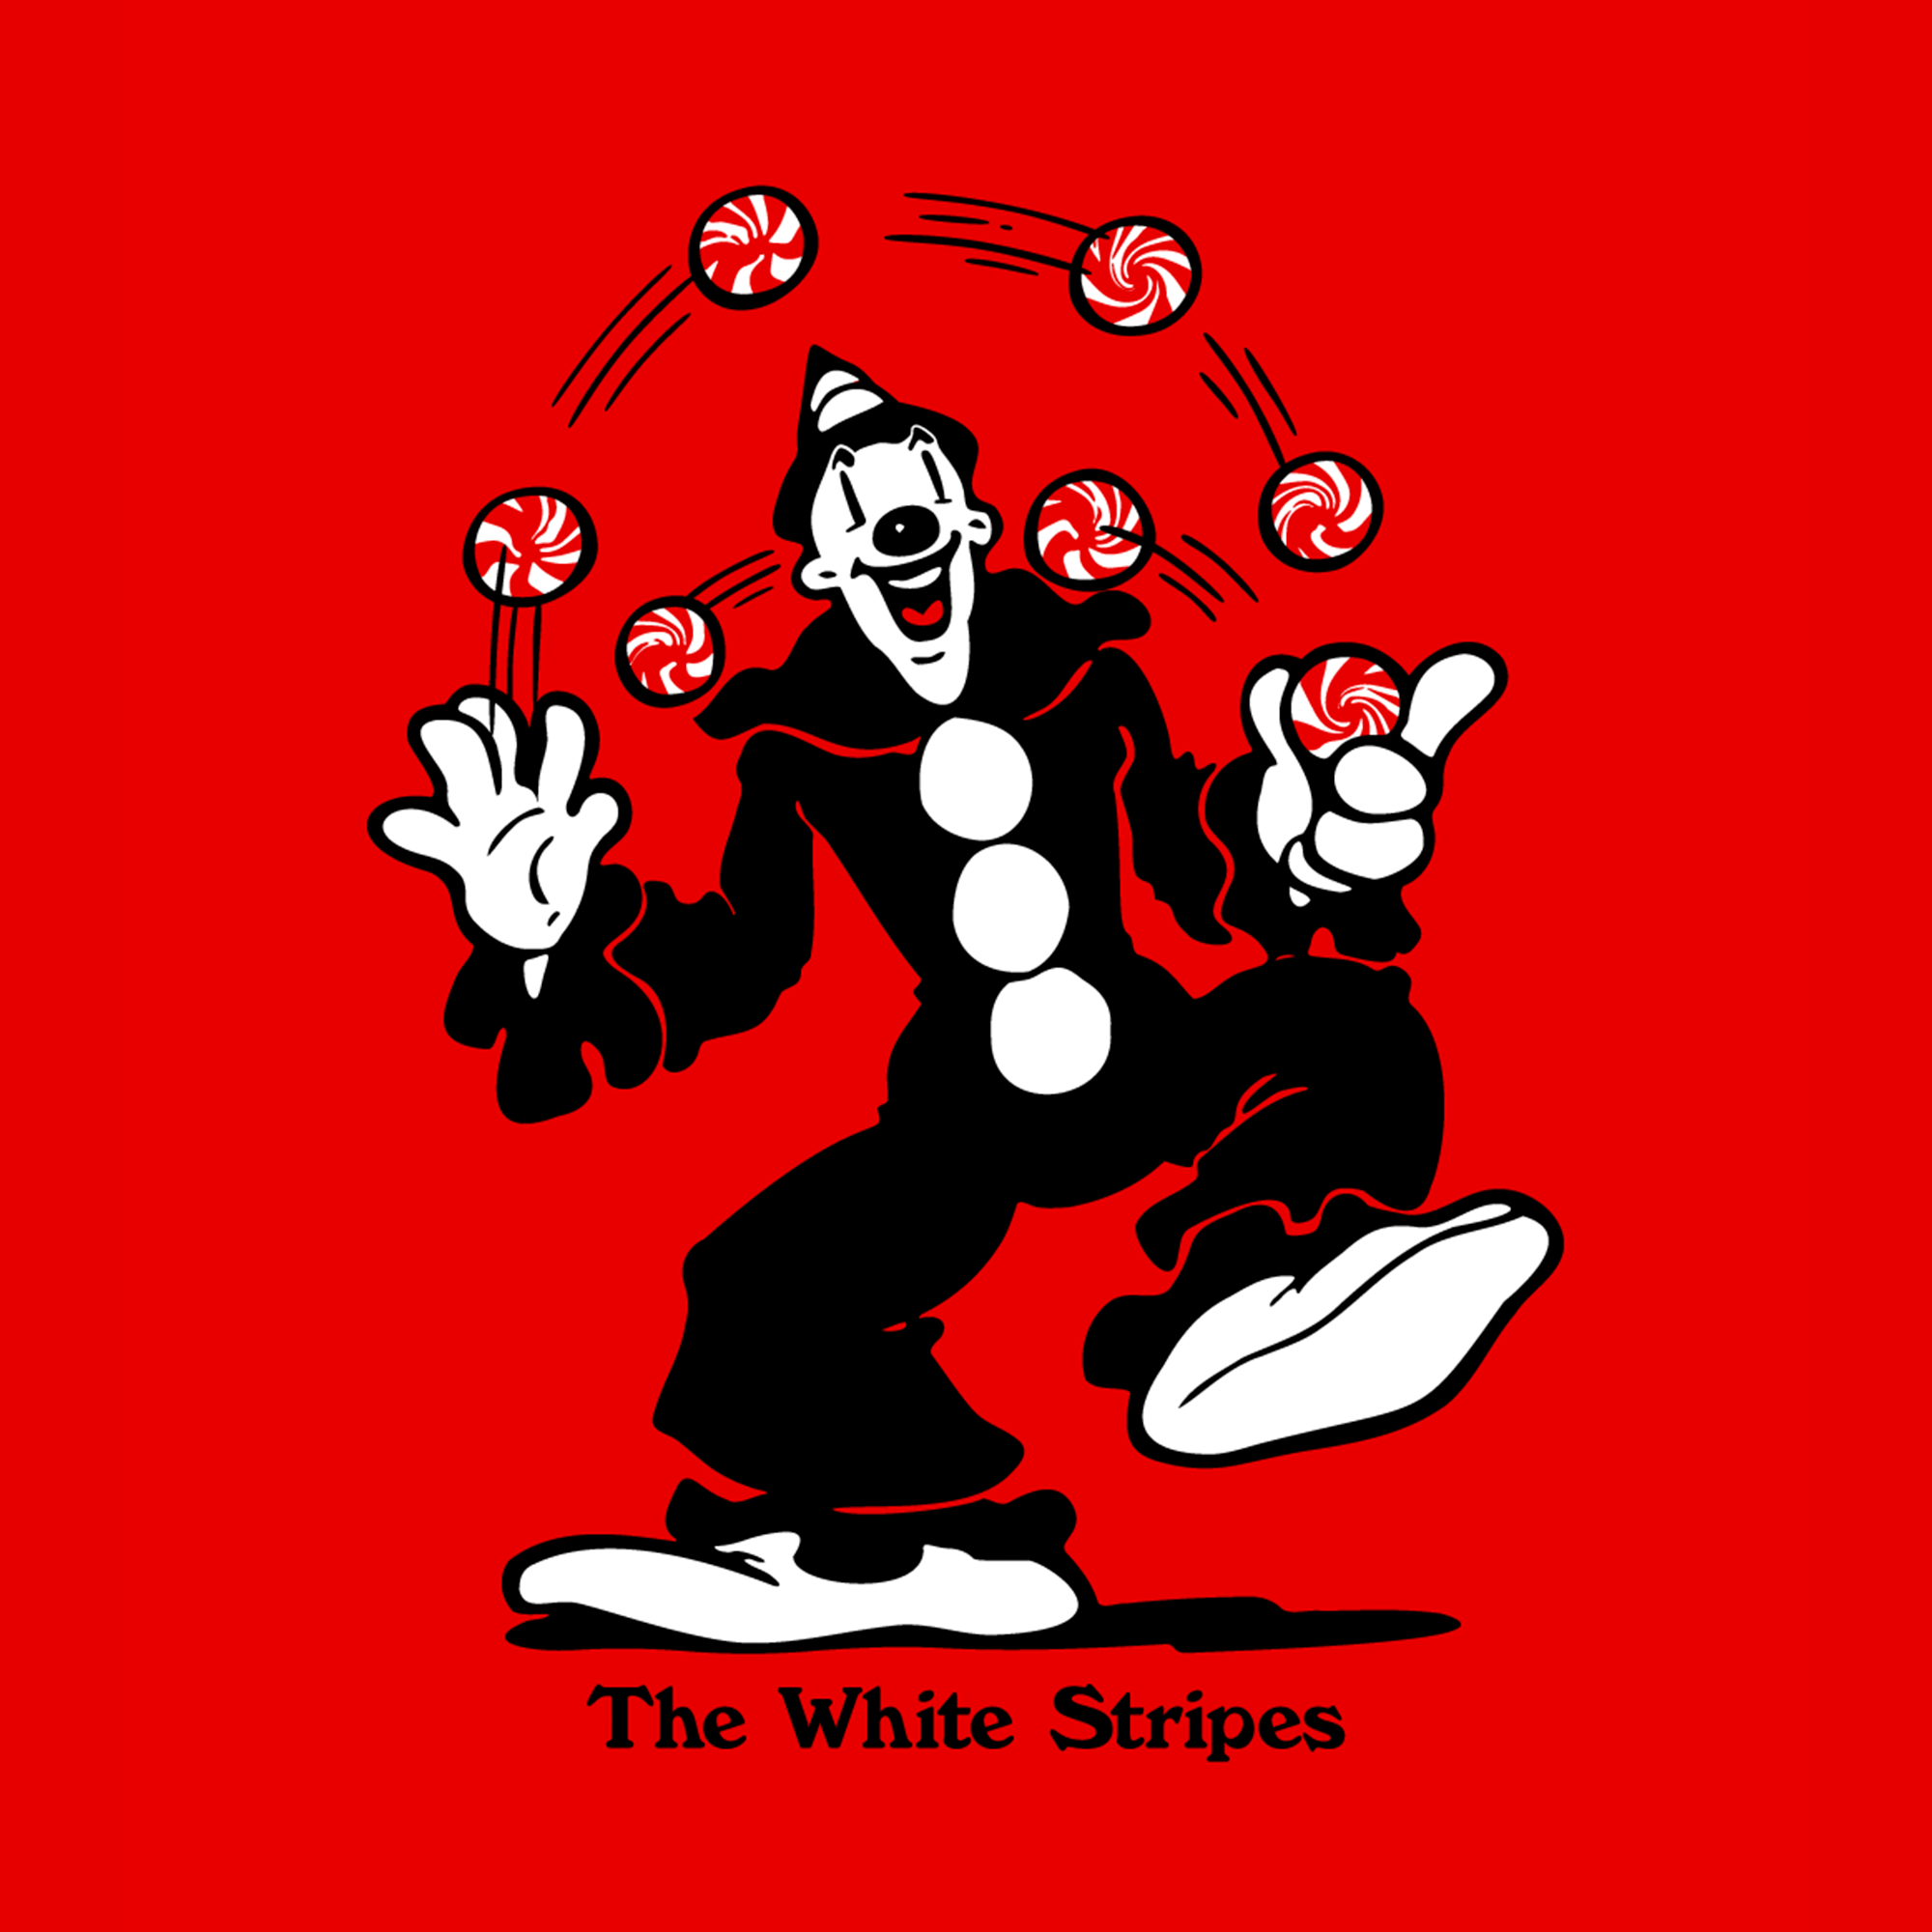 The White Stripes x Koko the Clown  Jason Cryer